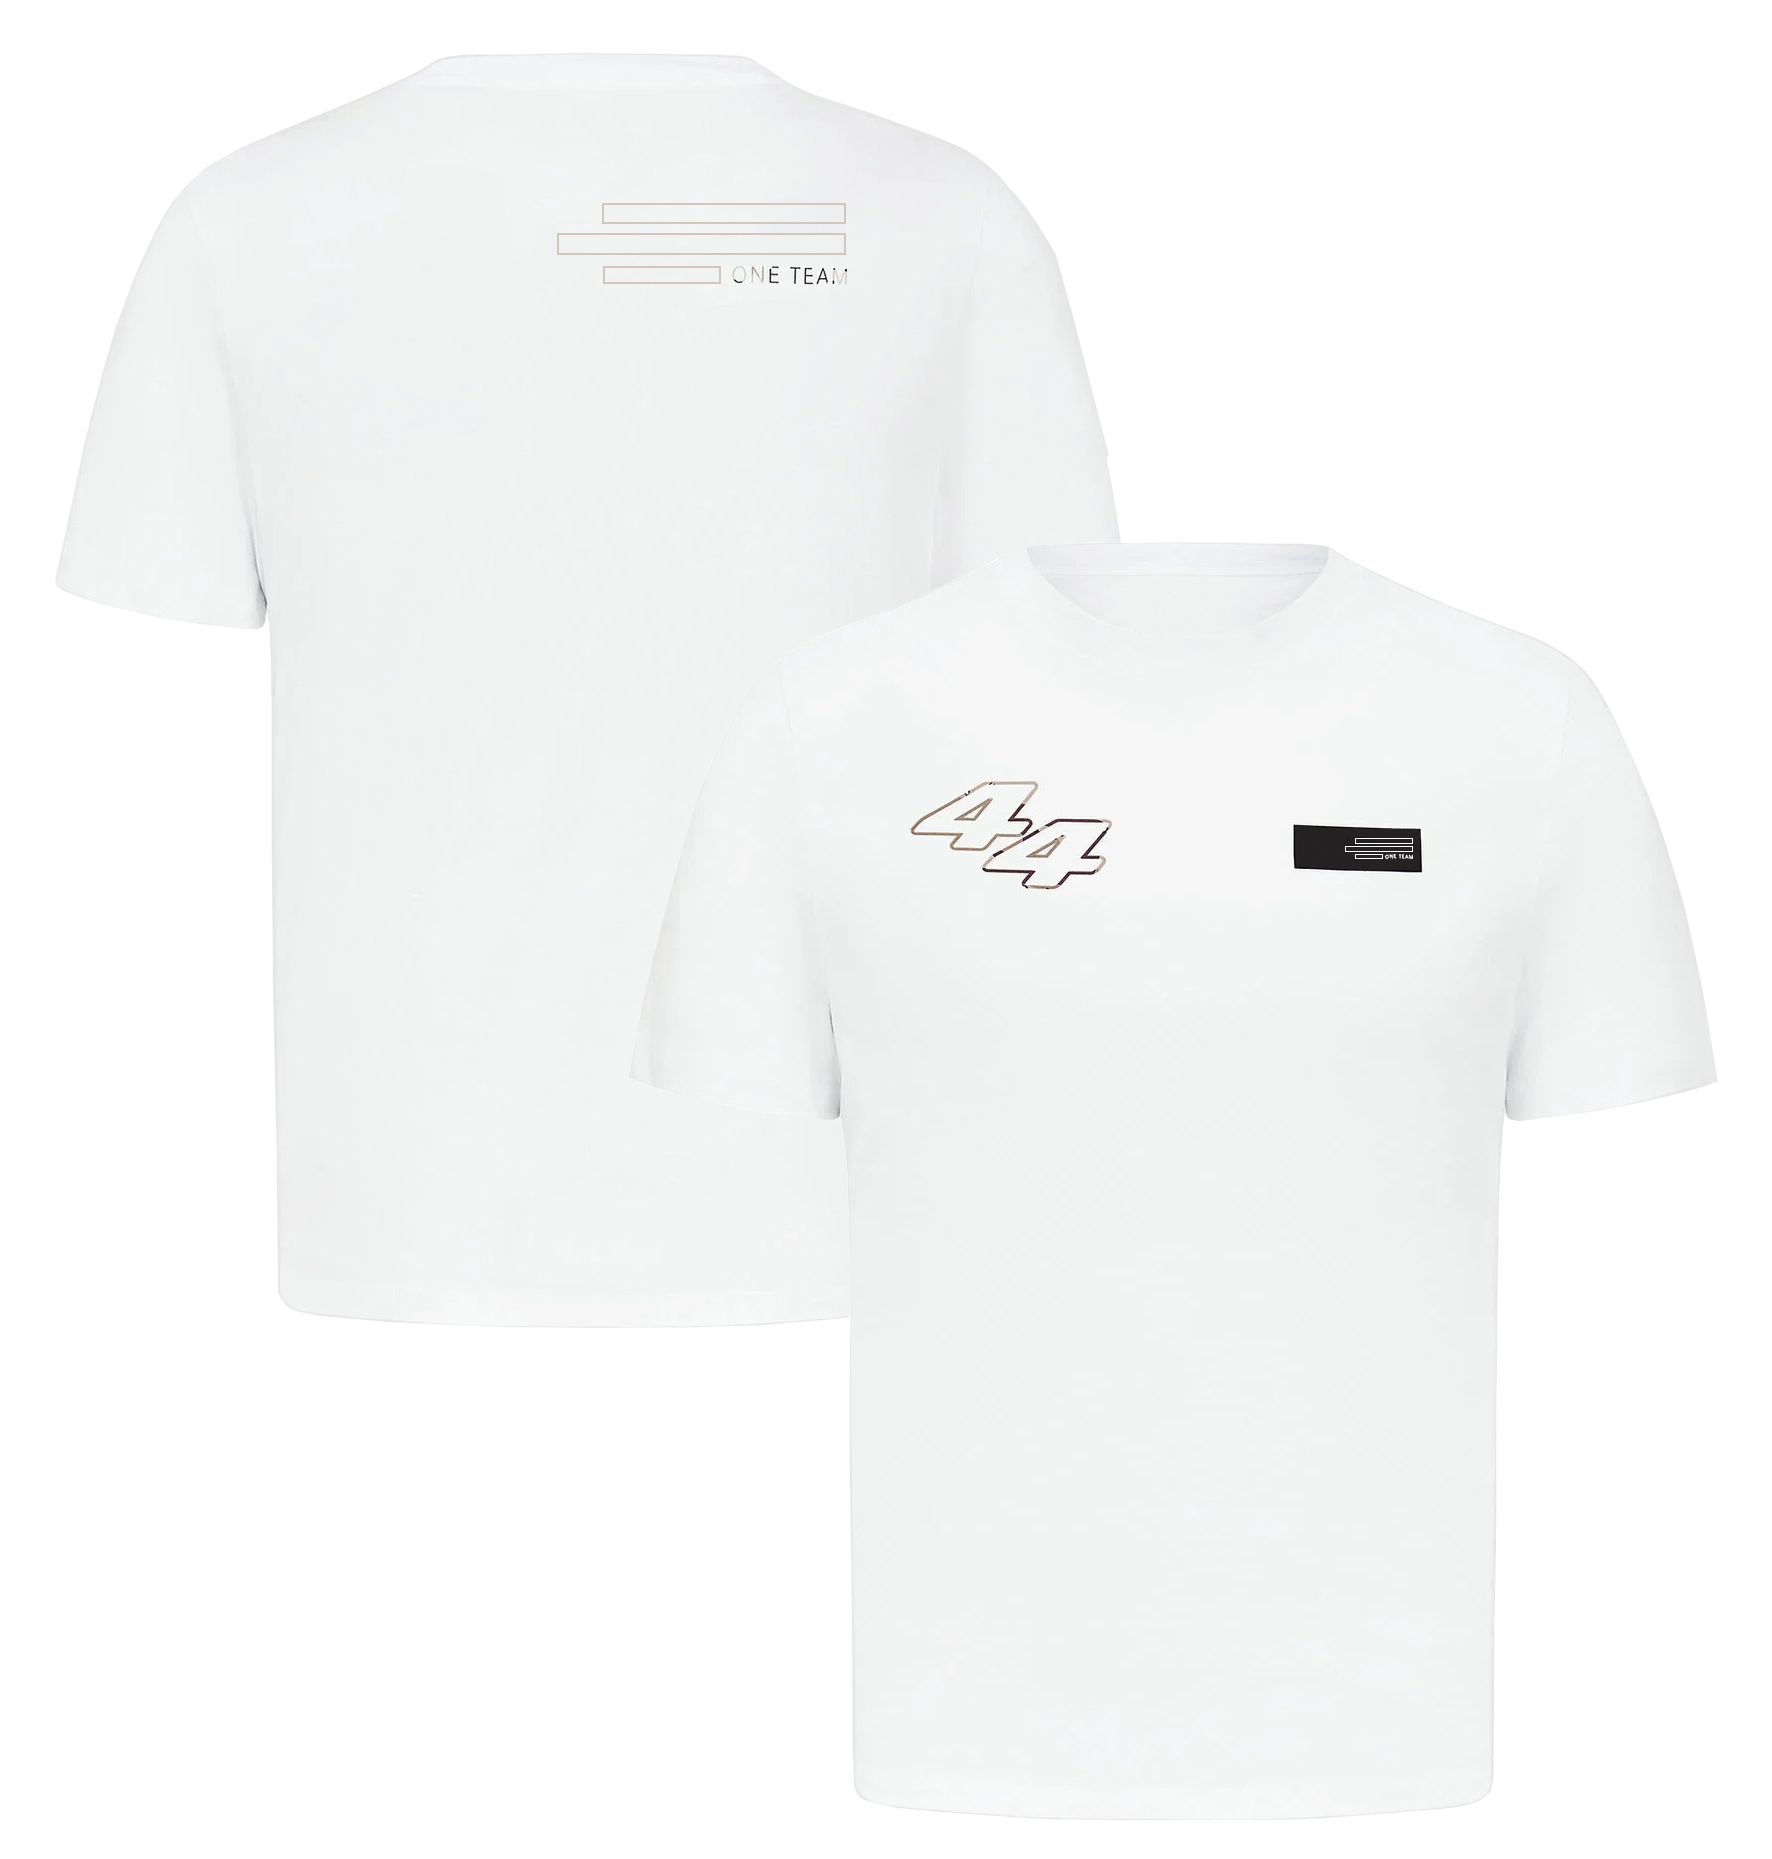 F1 44 63 Driver T-shirt Formula 1 Team Racing Logo T-shirt Men Women Fashion O-Neck T-Shirt Casual Sports Tees Tops Jersey Plus Size